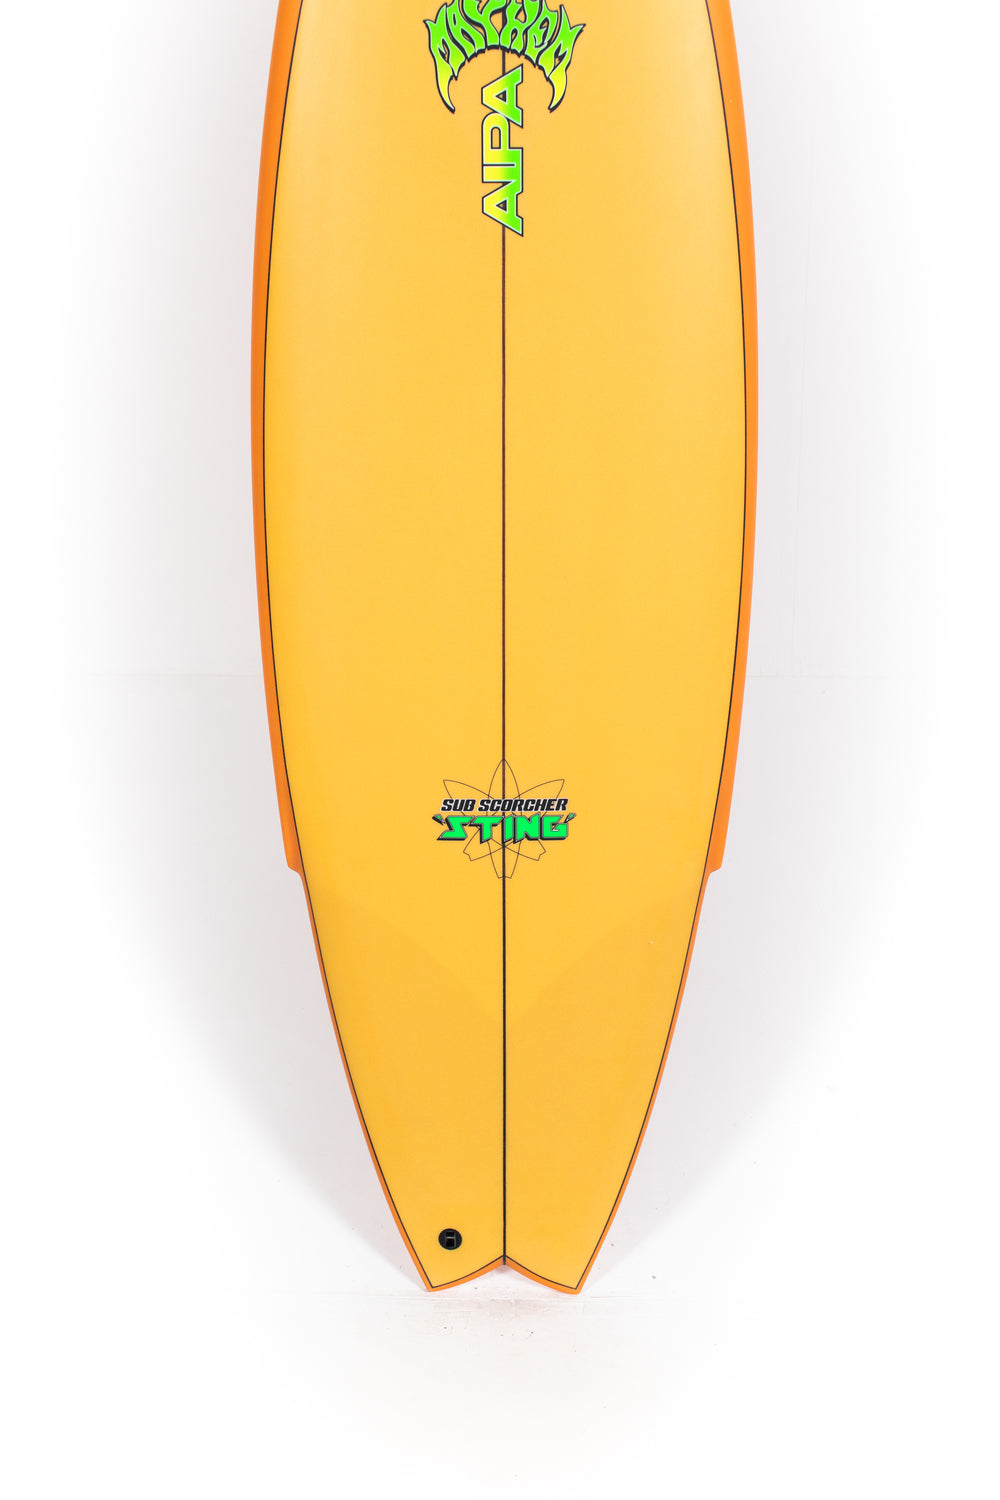 Lost Surfboard - SUB SCORCHER STING by Mayhem x Brink - 6'0” x 20